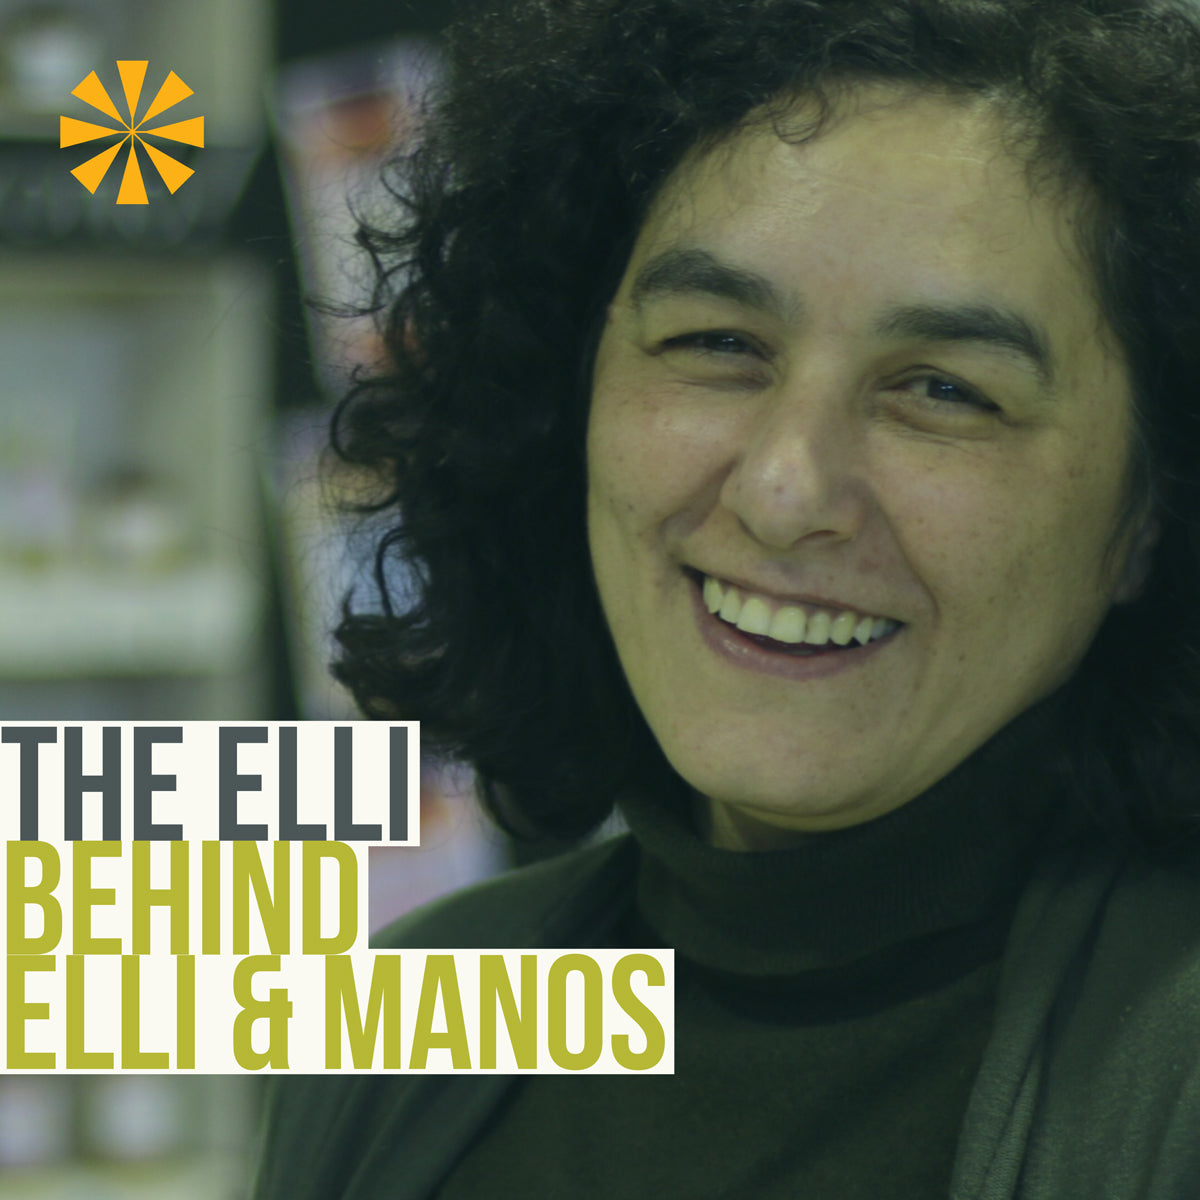 The Elli behind Elli & Manos